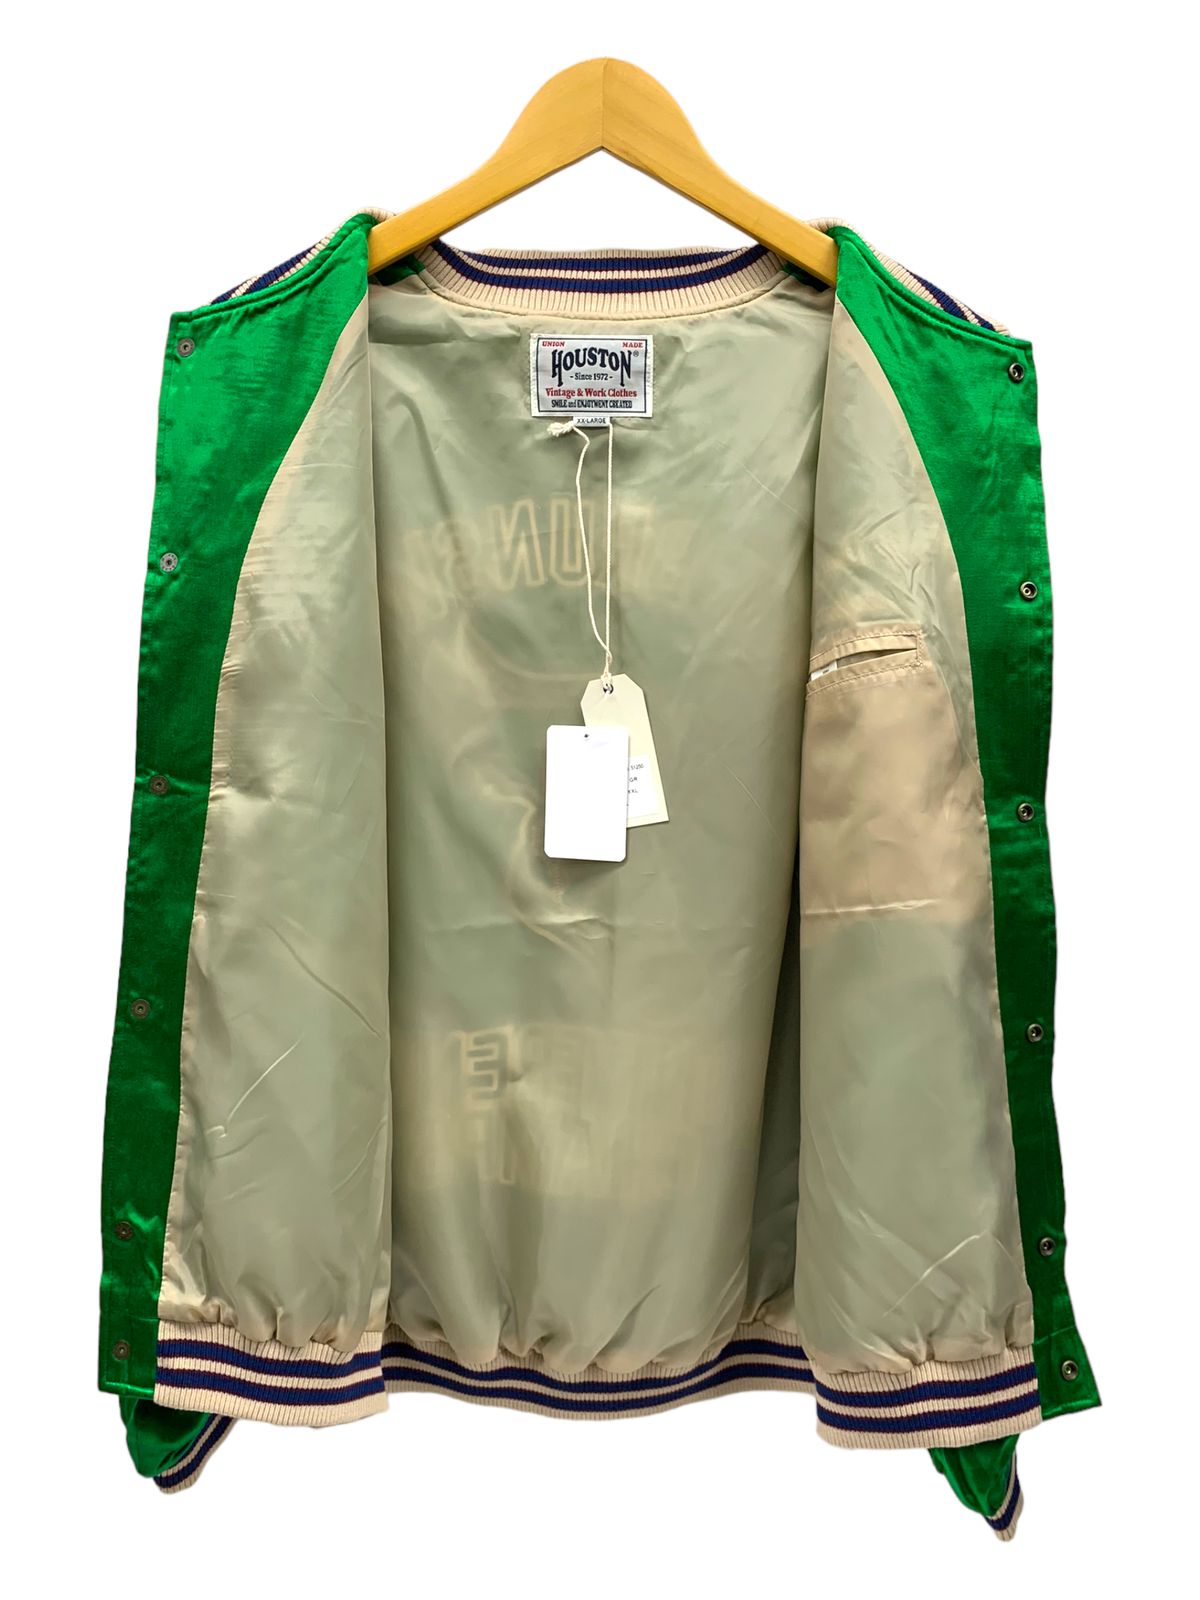 ヒューストン レーヨンアワードジャケット 51250 スタジャン XXL 緑63cm袖丈